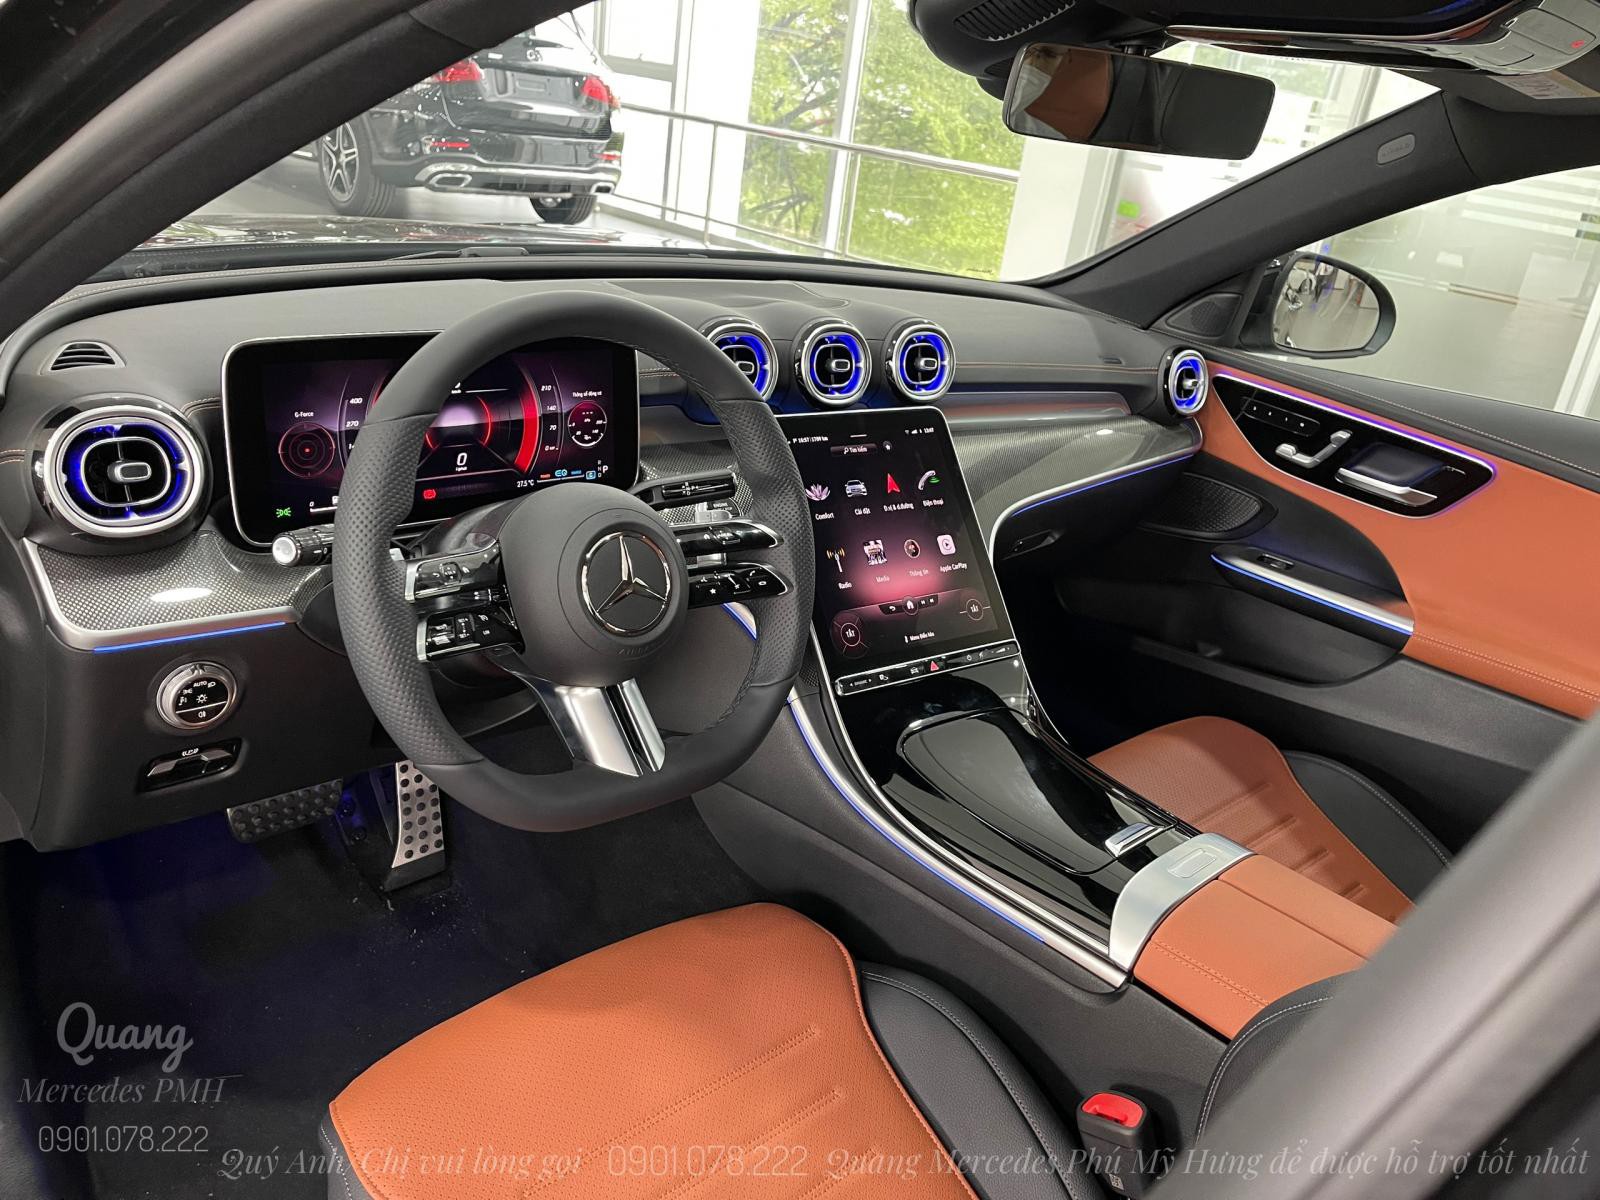 Mercedes C300 AMG 2022 | Cọc sớm nhận xe Quận 2 | Trả góp tới 80% | Lãi suất hấp dẫn| Quang 0901 078 222